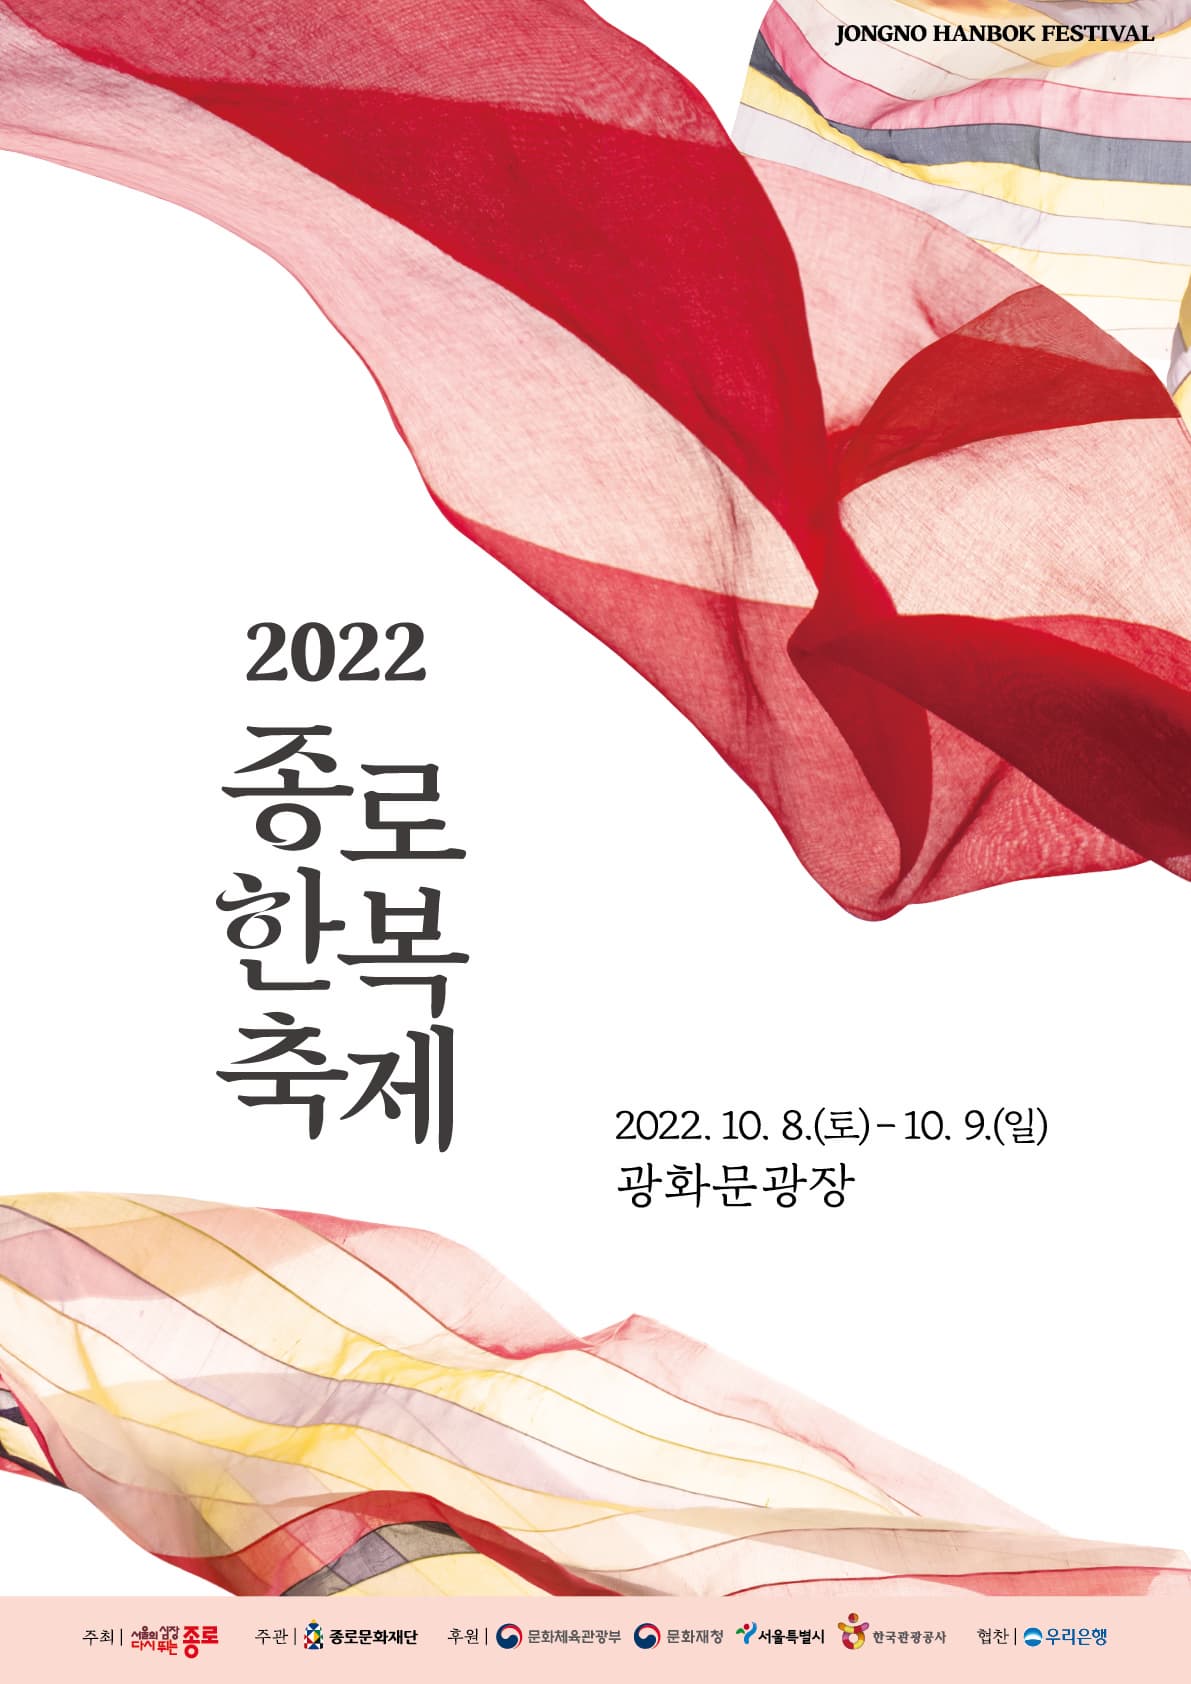 2022 종로한복축제 | 2022.10.8(토)부터 10.9(일)까지 광화문광장